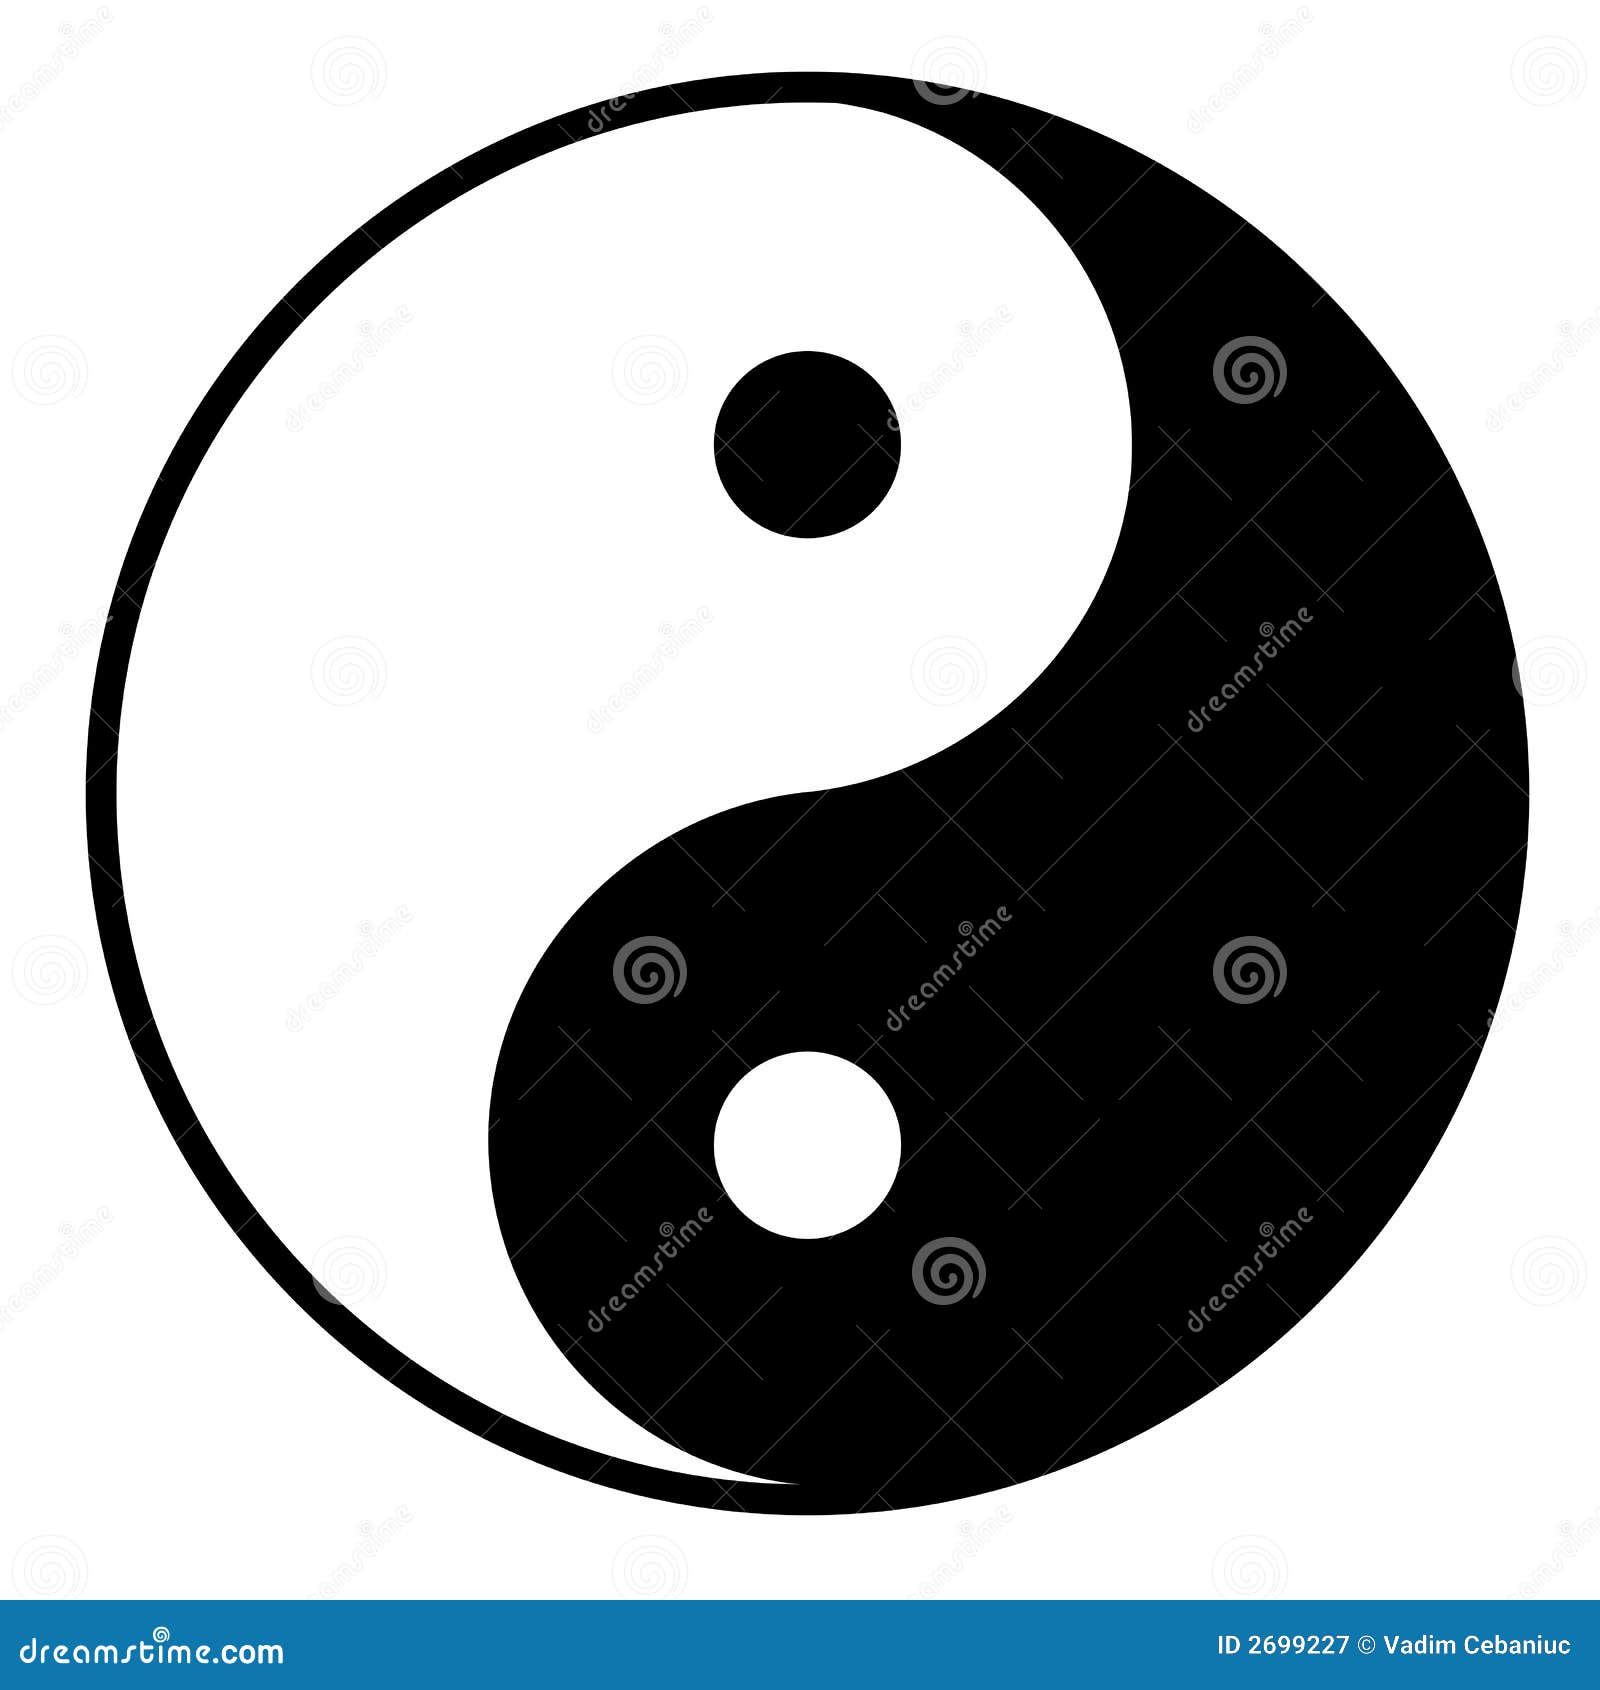 Kompletterande kosmiskt beskriver krafter som motsätter ursprungligt principsymbol två som yinyang